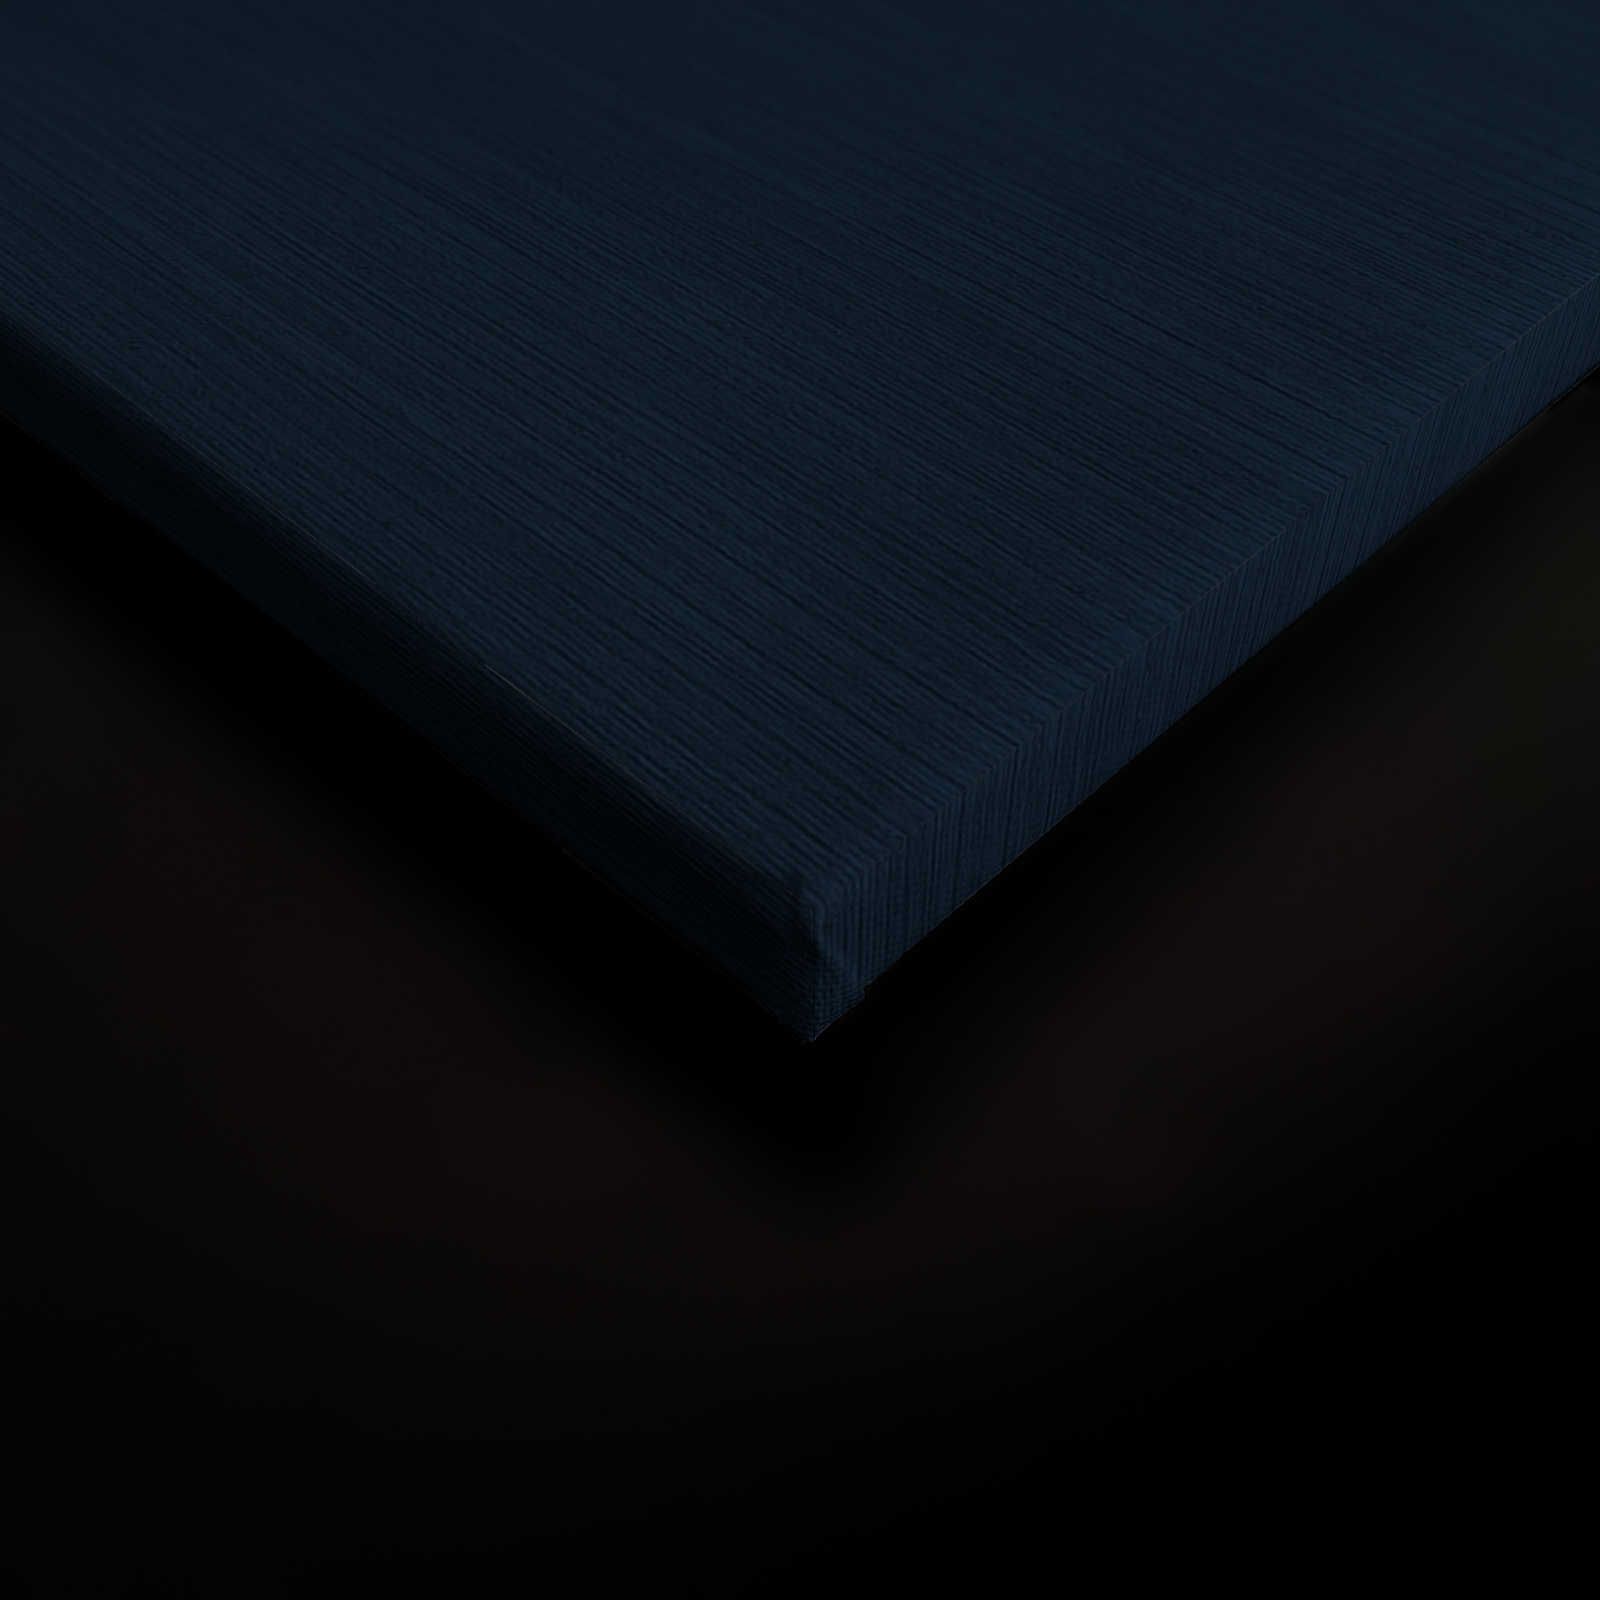             Down Under 1 - Quadro su tela con motivo marittimo in stile fumetto - 0,90 m x 0,60 m
        